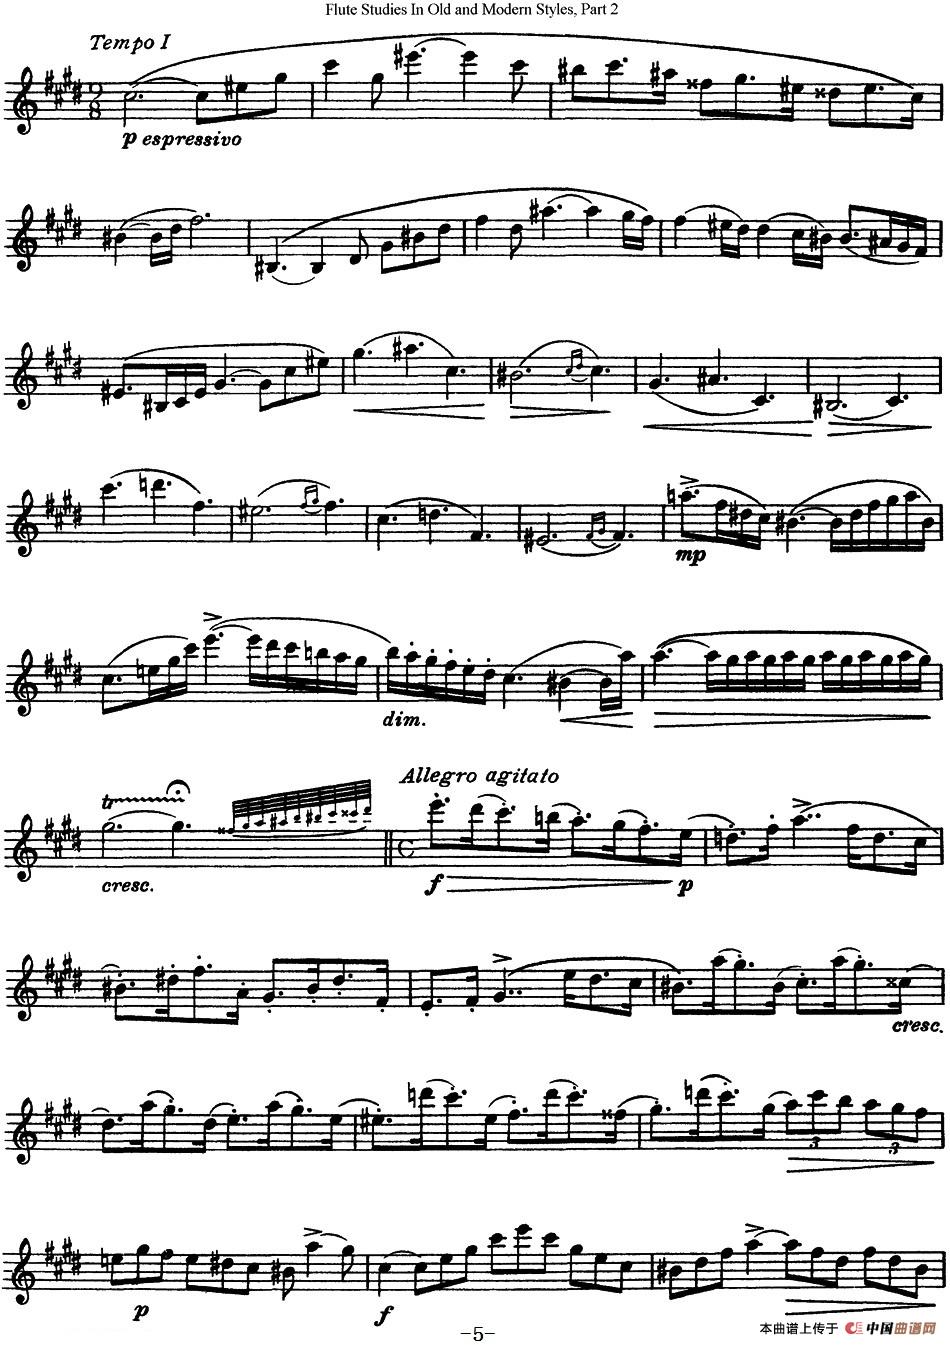 斯勒新老风格长笛练习重奏曲（第二部分）（N